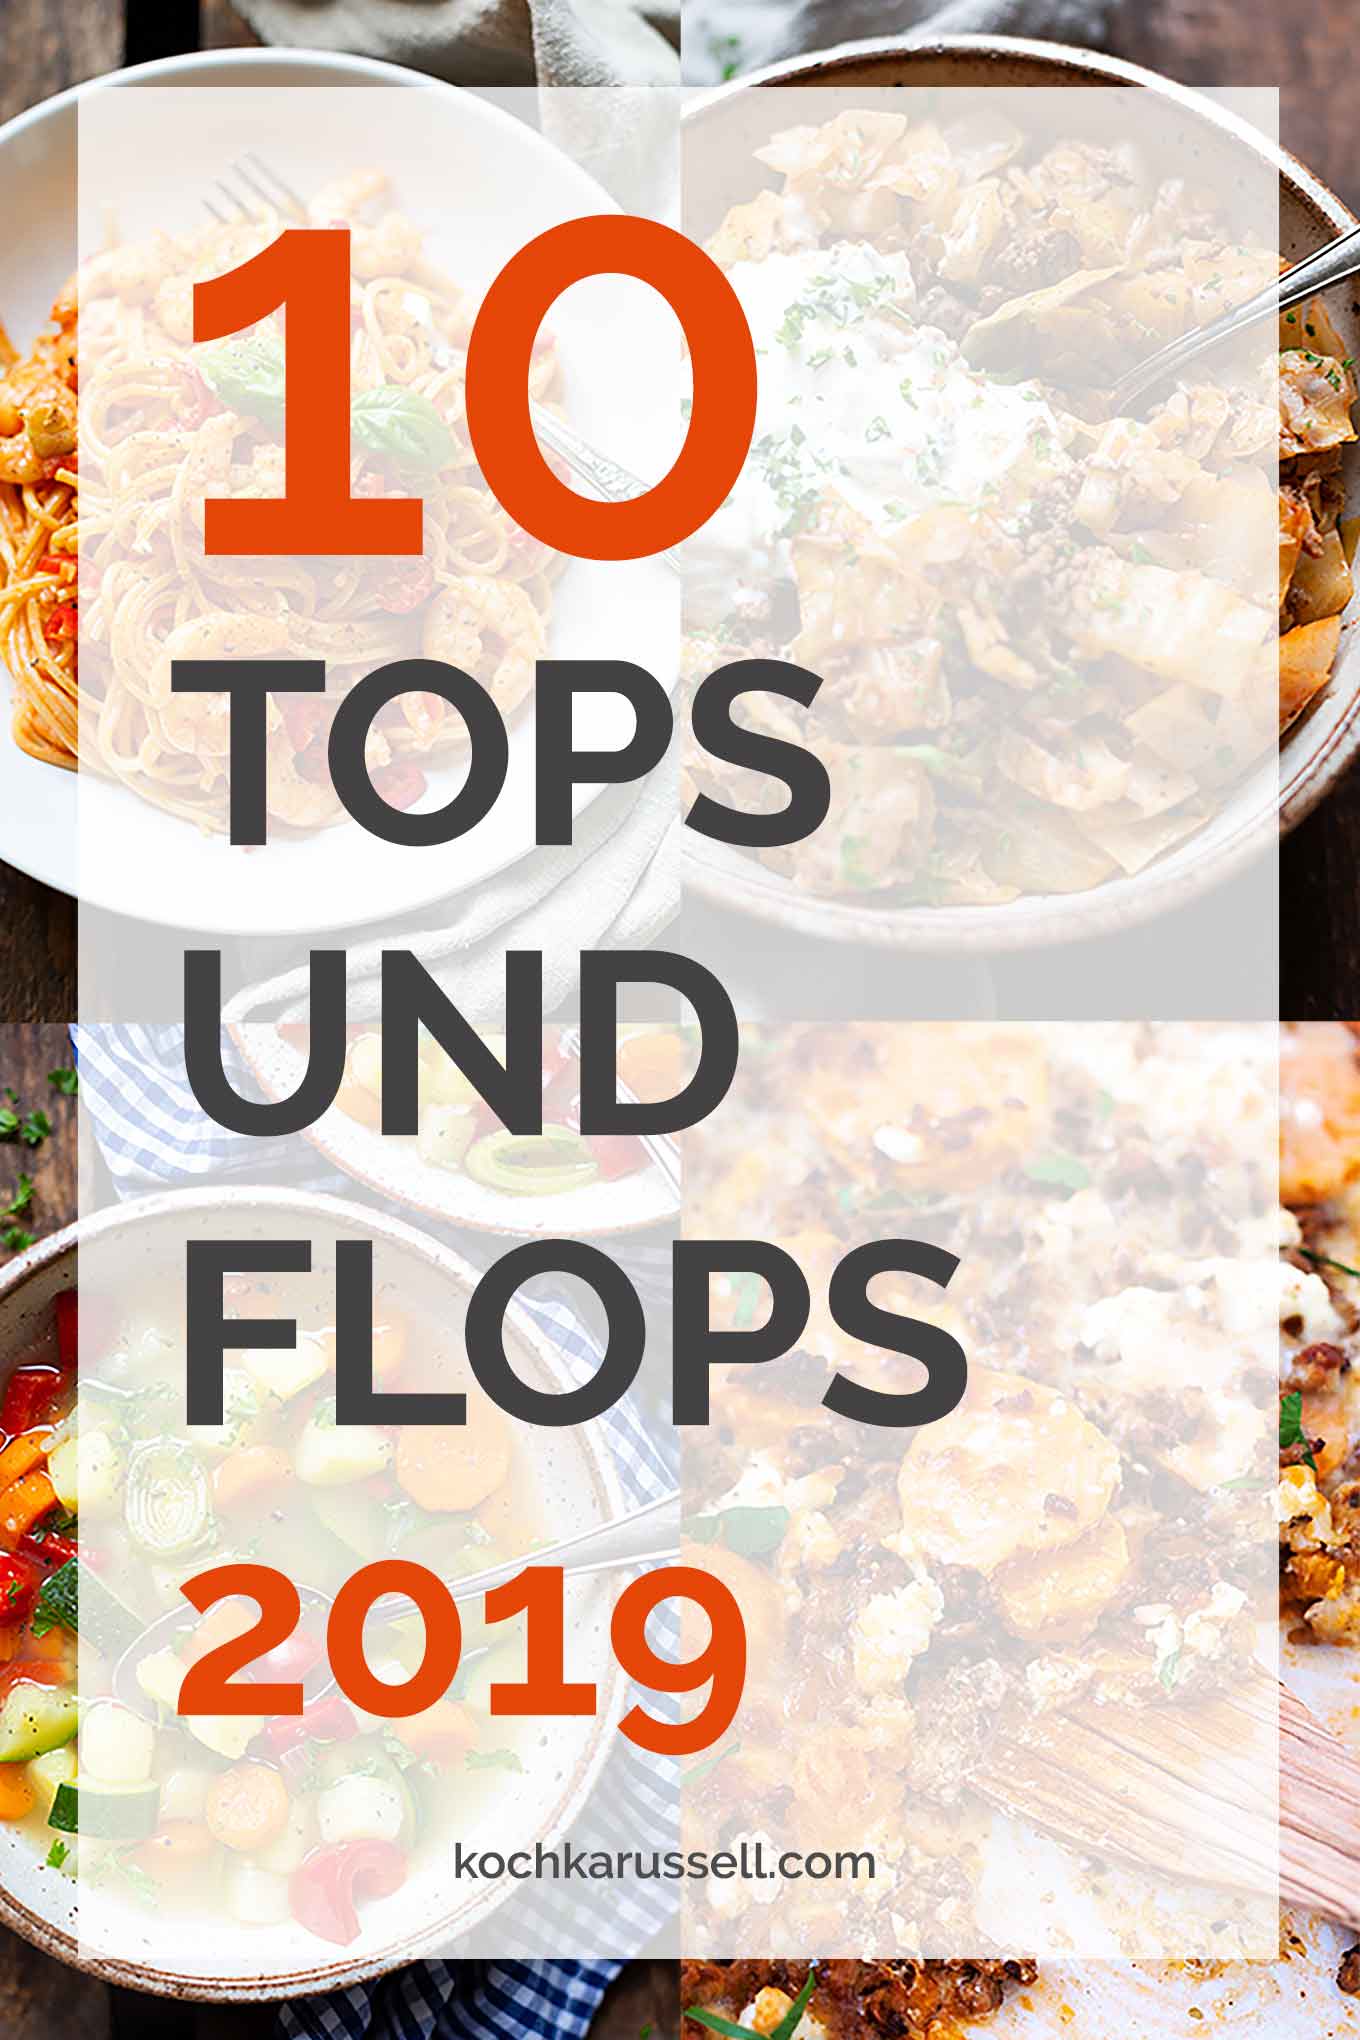 Jahresrückblick 2019: 10 Tops und Flops 2019 im Kochkarussell - Kochkarussell Foodblog 